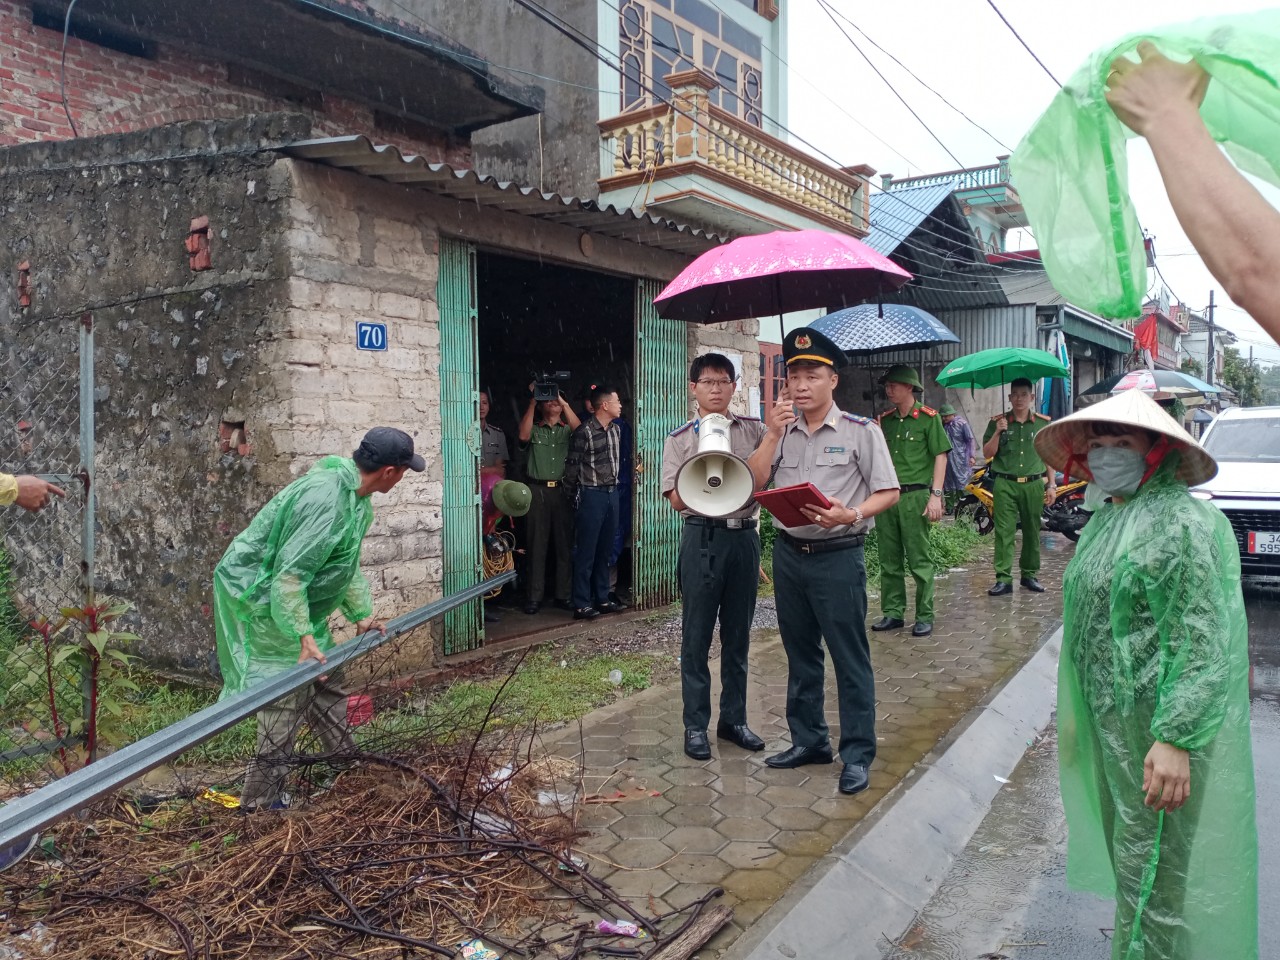 Cục Thi hành án dân sự tỉnh Hải Dương tổ chức cưỡng chế chuyển giao quyền sử dụng đất tại Khu dân cư Duyên Linh, phường Duy Tân,  thị xã Kinh Môn